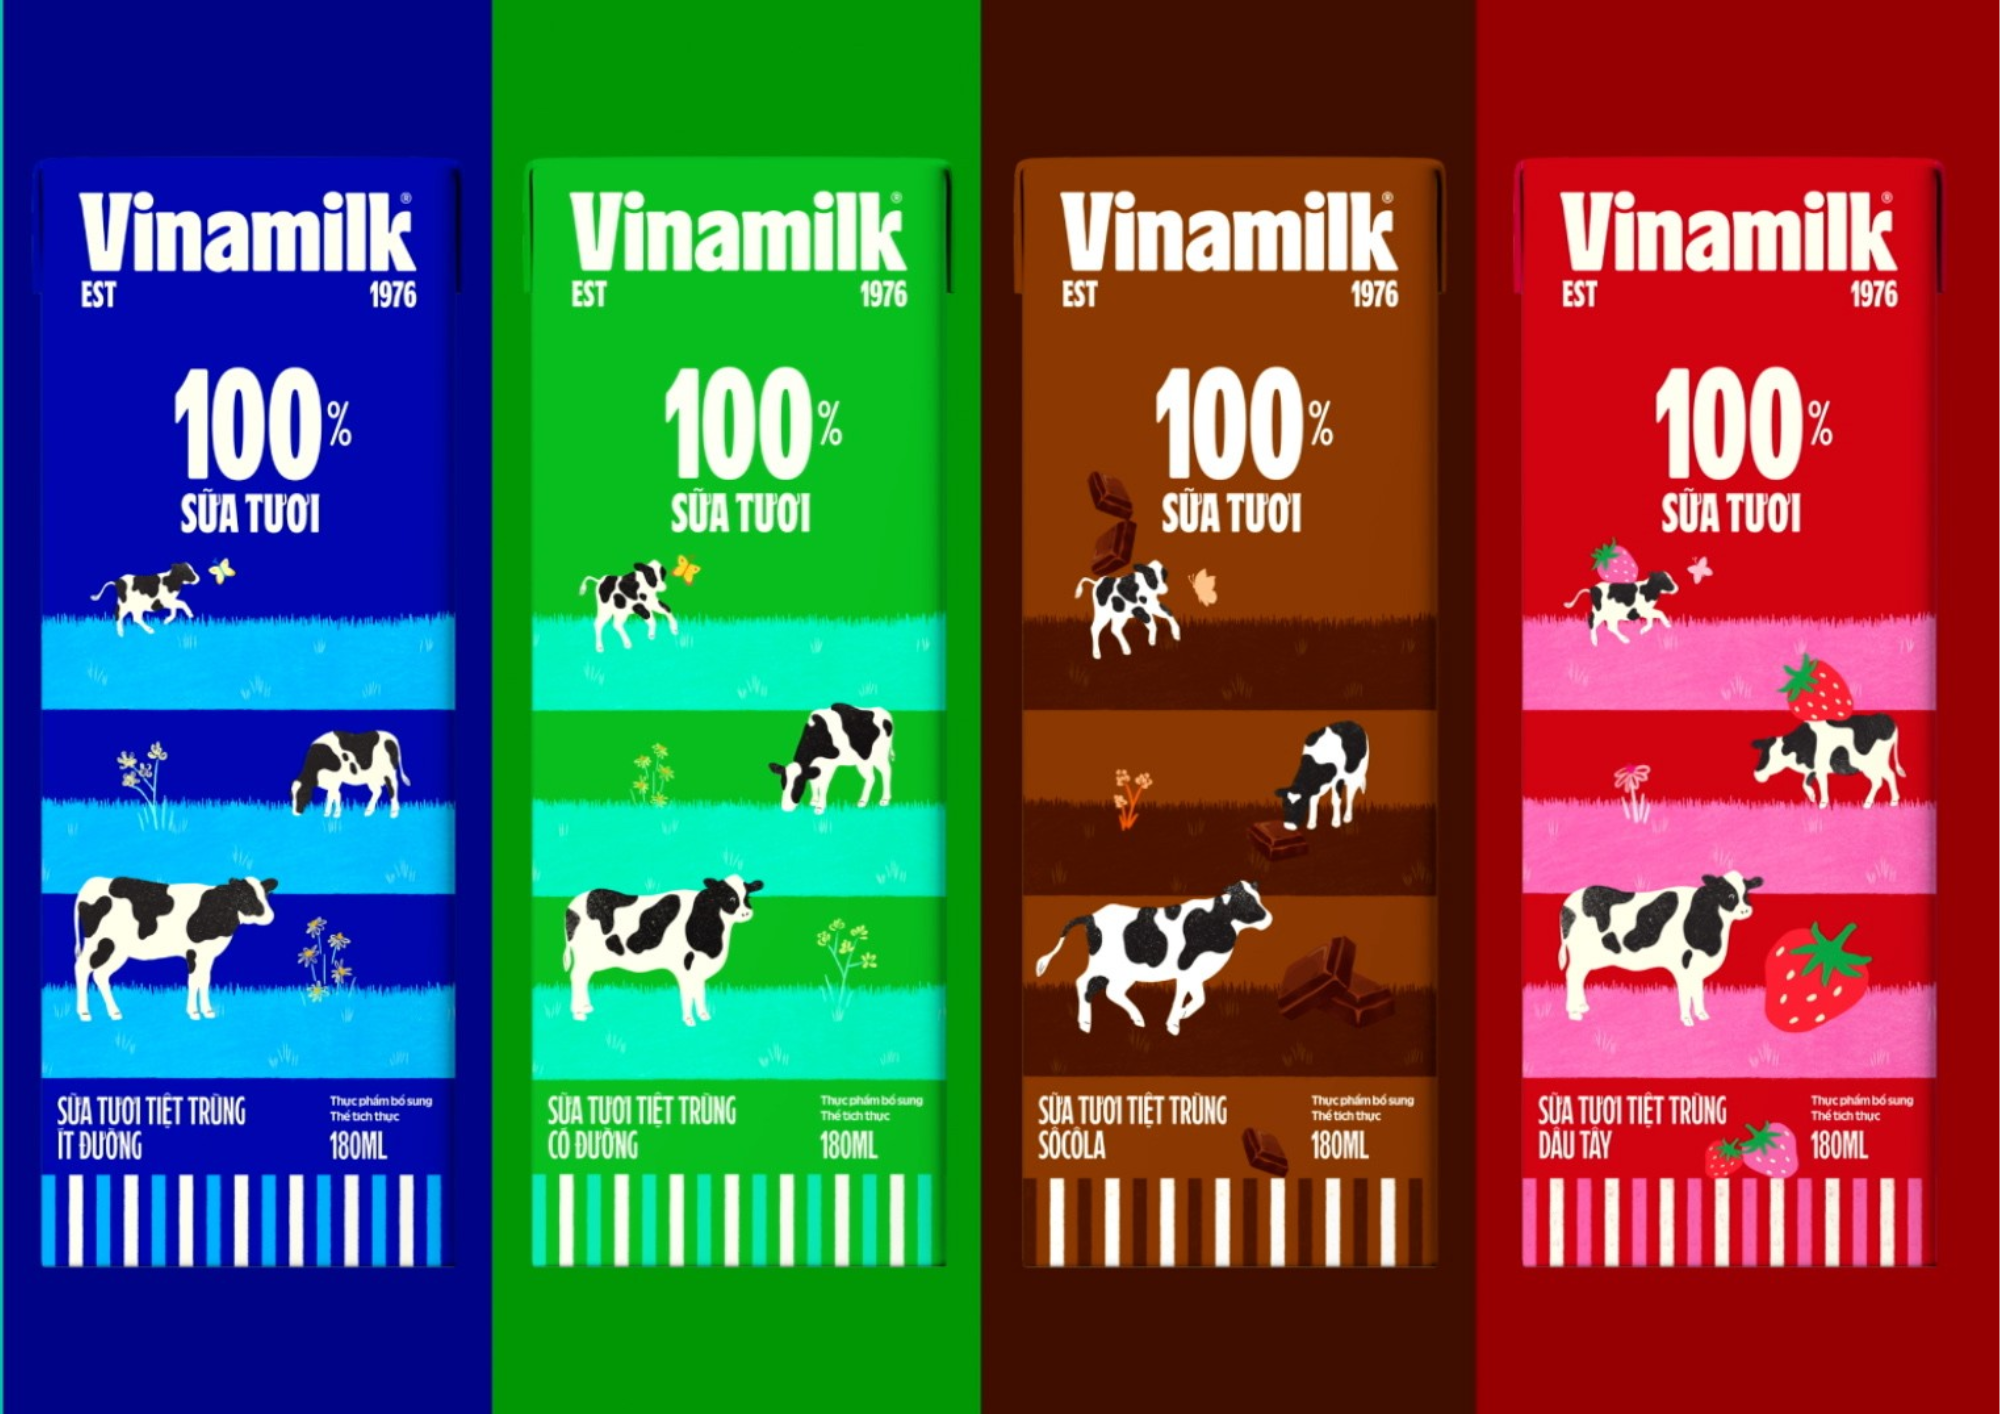 Bao bì sản phẩm sữa Vinamilk